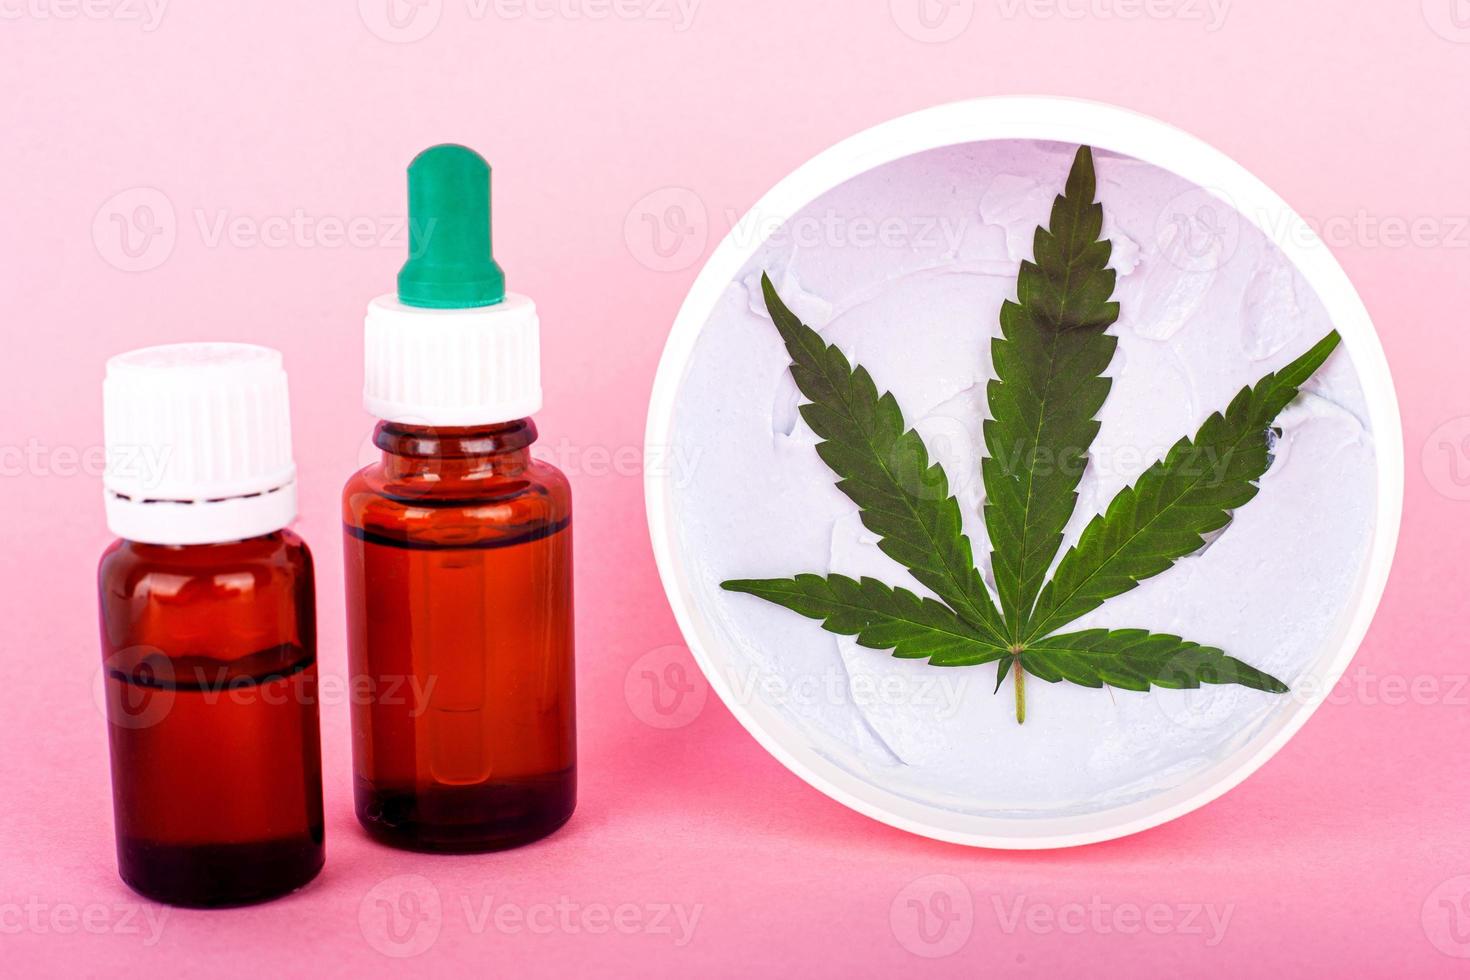 Aceites cosméticos a base de cannabis, frascos con extracto de marihuana. foto